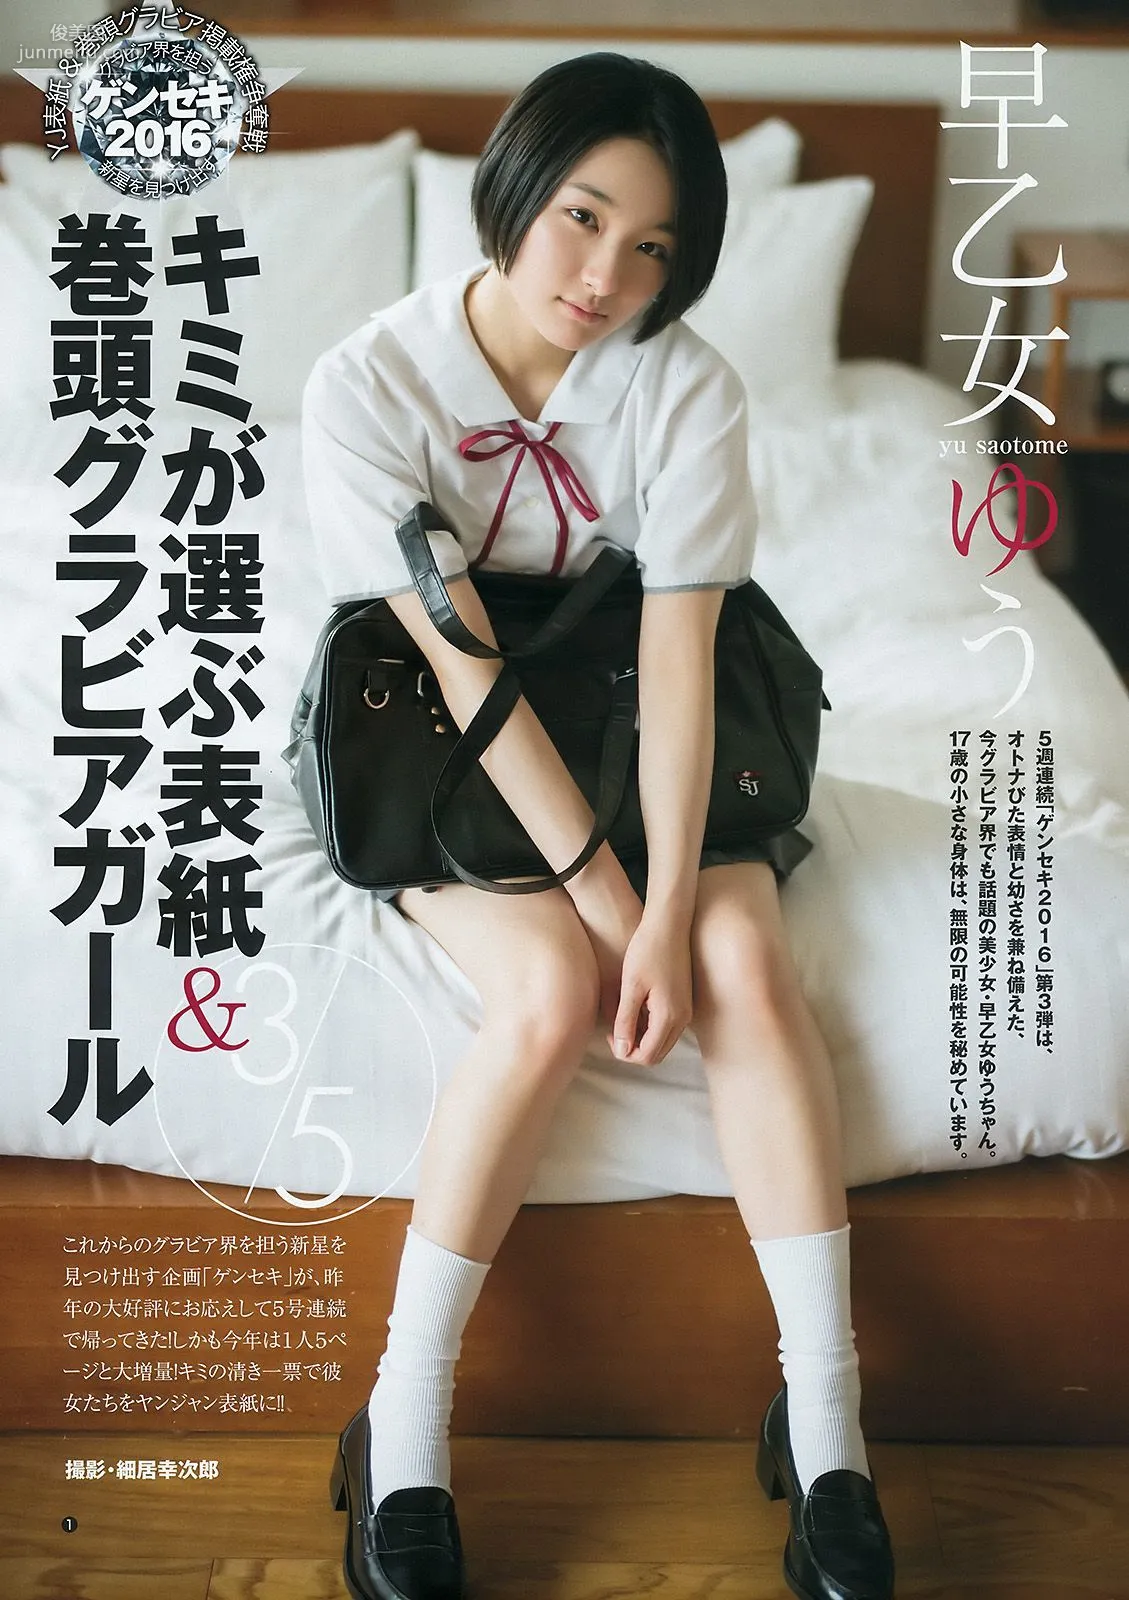 馬場ふみか 片山萌美 早乙女ゆう [Weekly Young Jump] 2016年No.41 写真杂志16